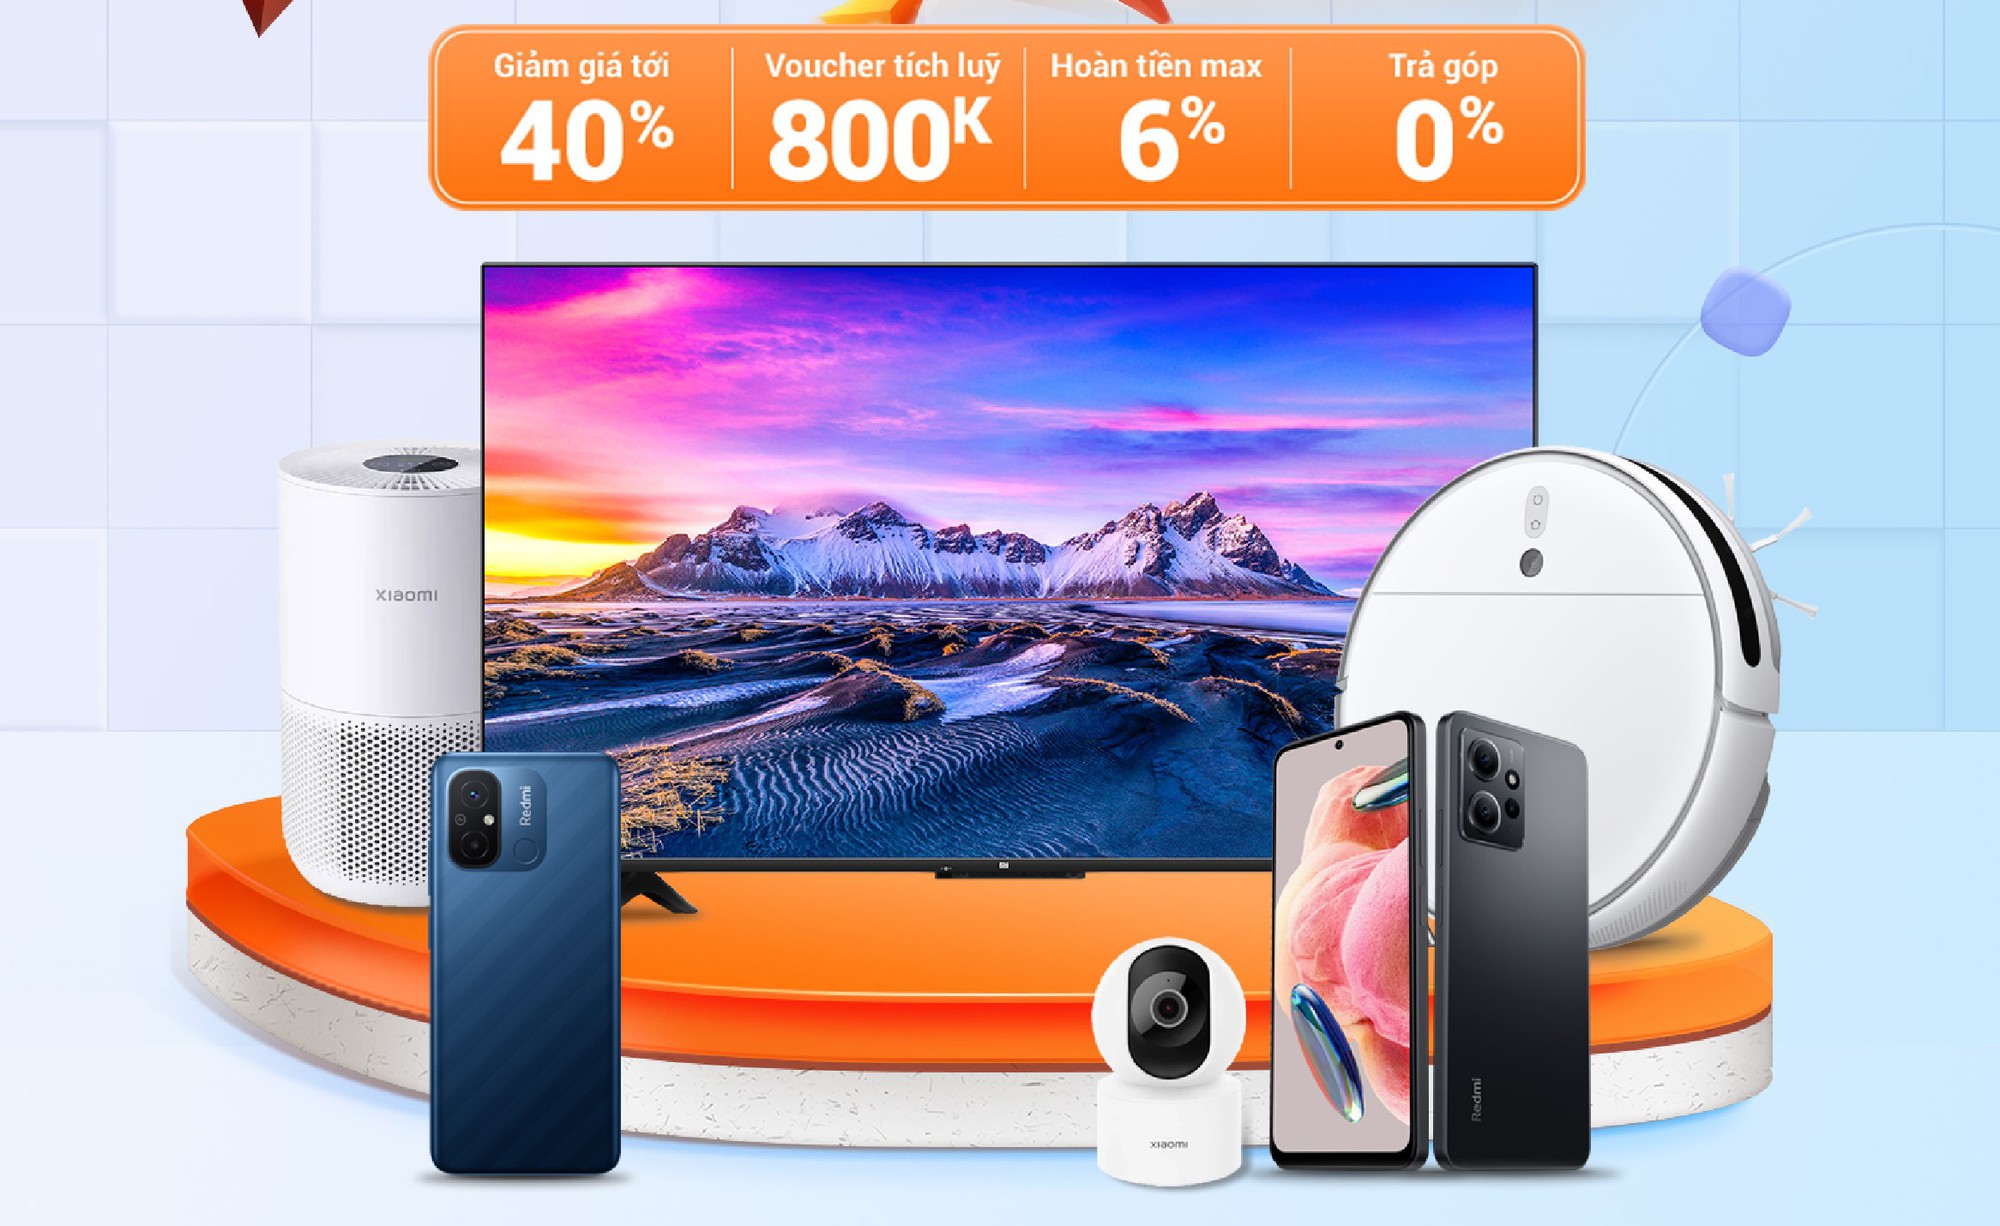 Fan Xiaomi xem ngay loạt điện thoại, đồ gia dụng sắp giảm đến 40% đợt sale ngày đôi 6/6 này - Ảnh 1.